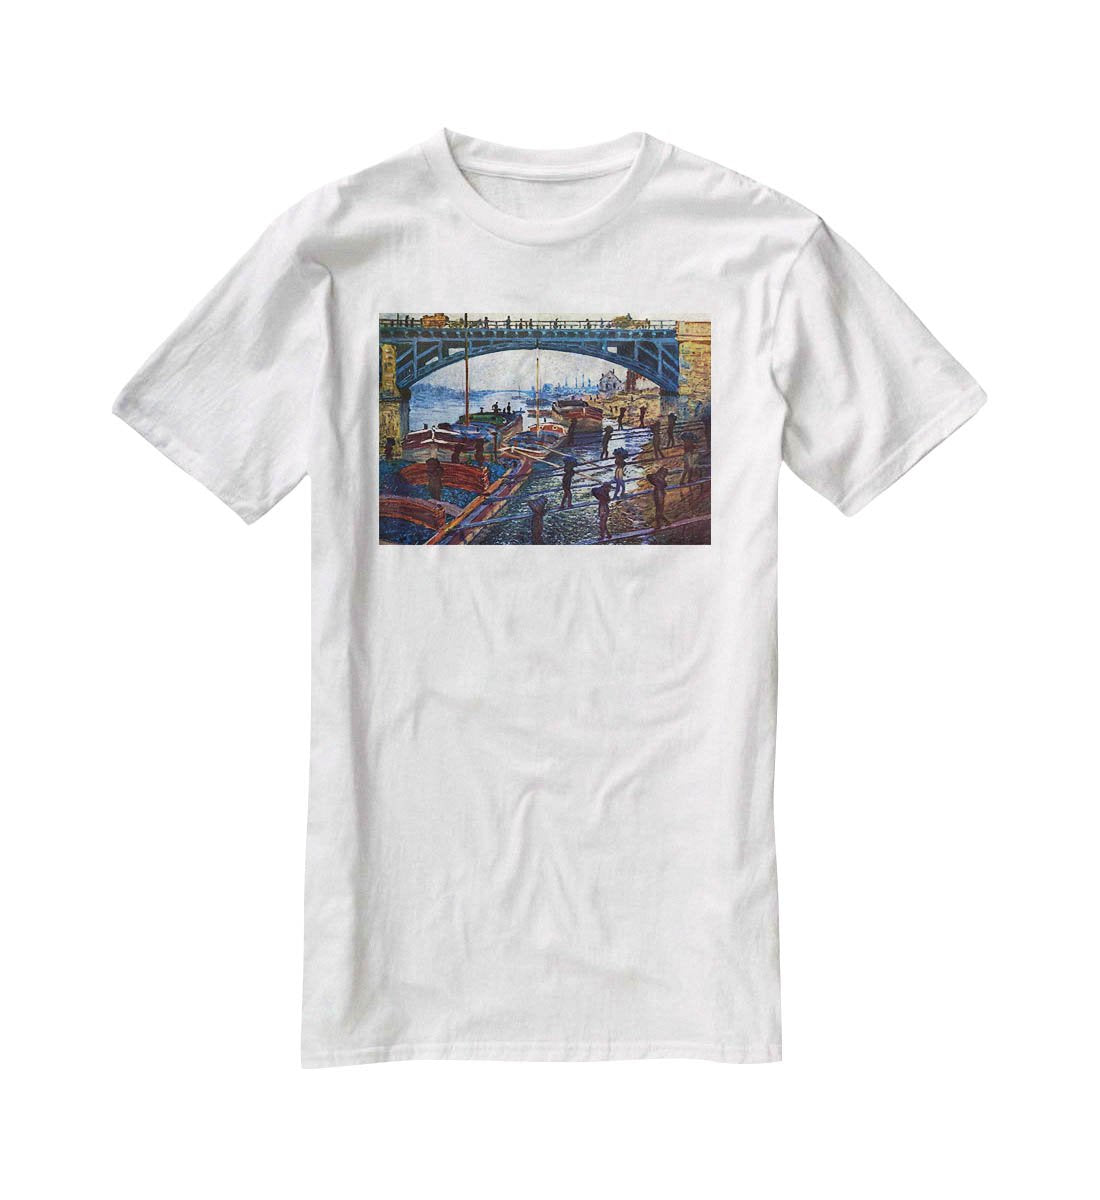 The coal carrier by Monet T-Shirt - Canvas Art Rocks - 5